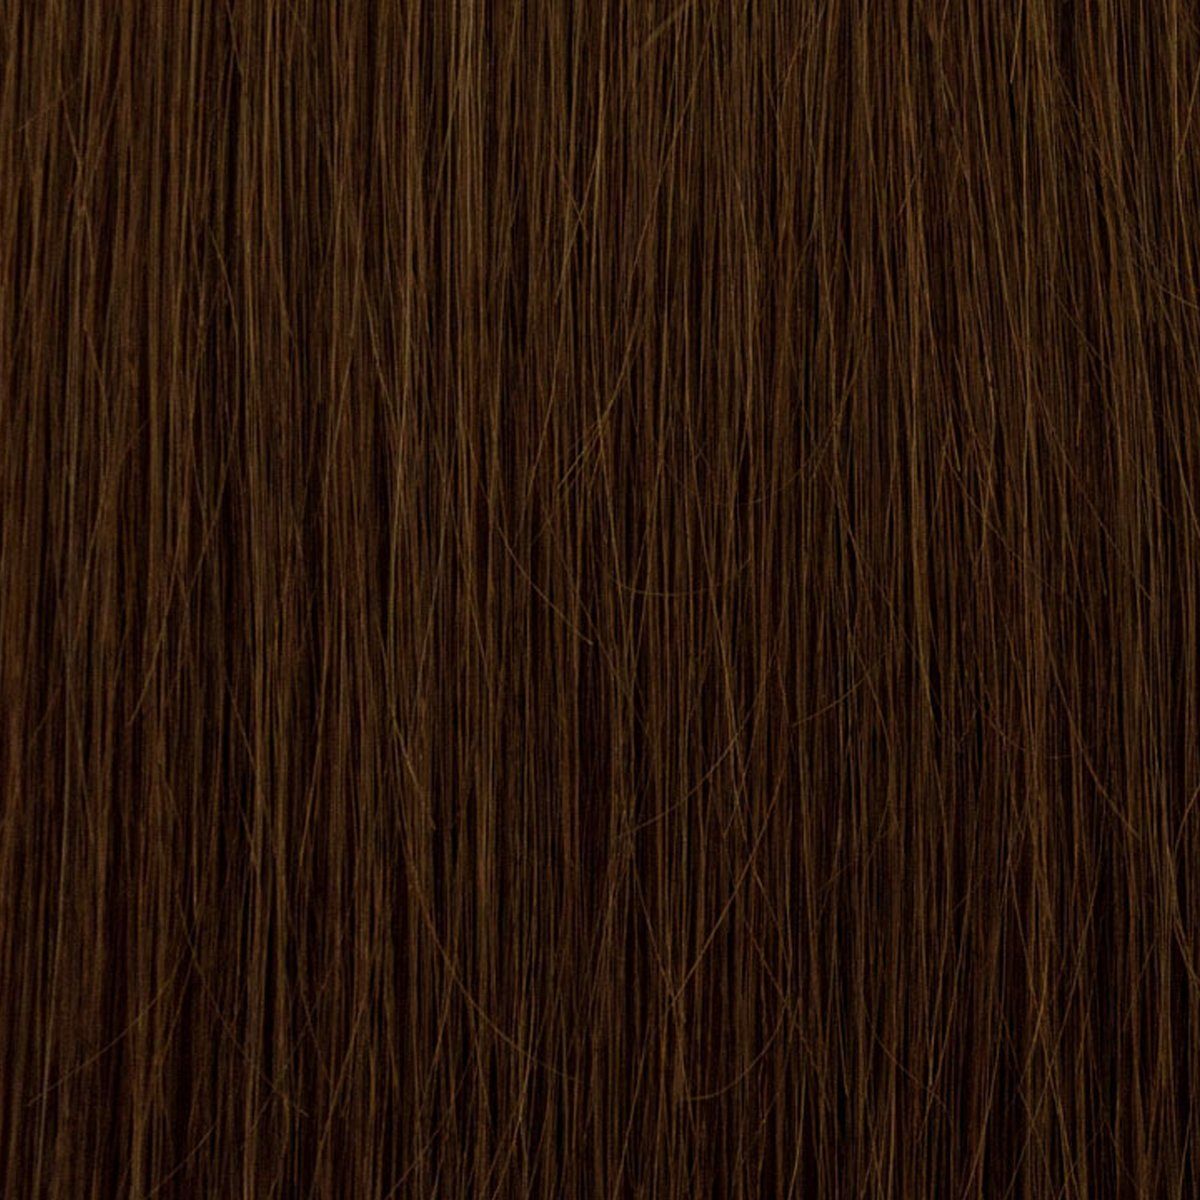 7-teiliges Haarverlängerung Set 60 mit cm 06 haselnussbraun Echthaar-Extension 130 EH - Echthaar Clip-in-Extensions, Echthaar Gramm,